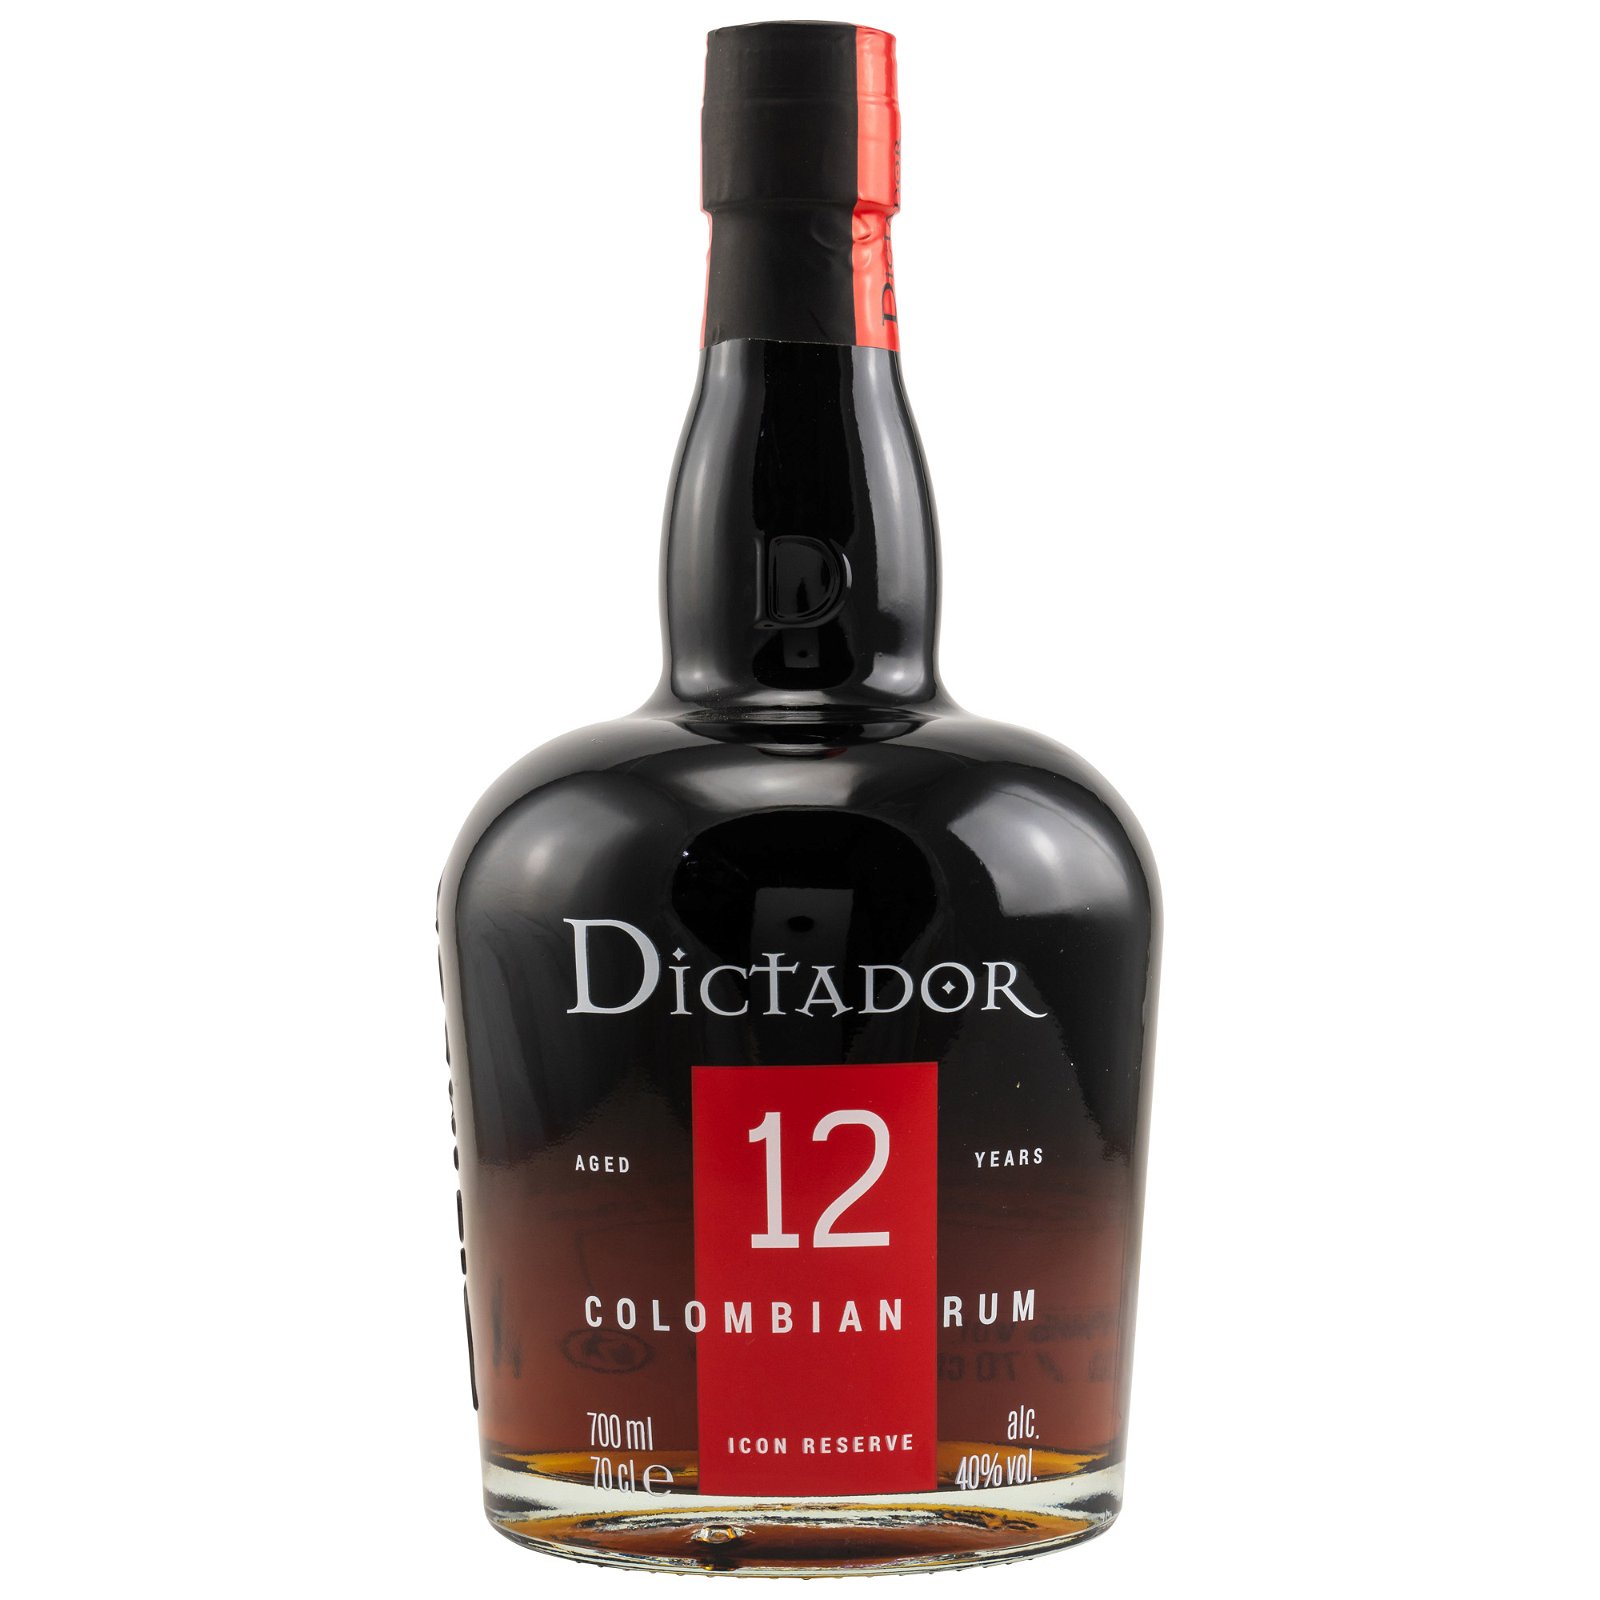 Dictador 12 Jahre Colombian Rum